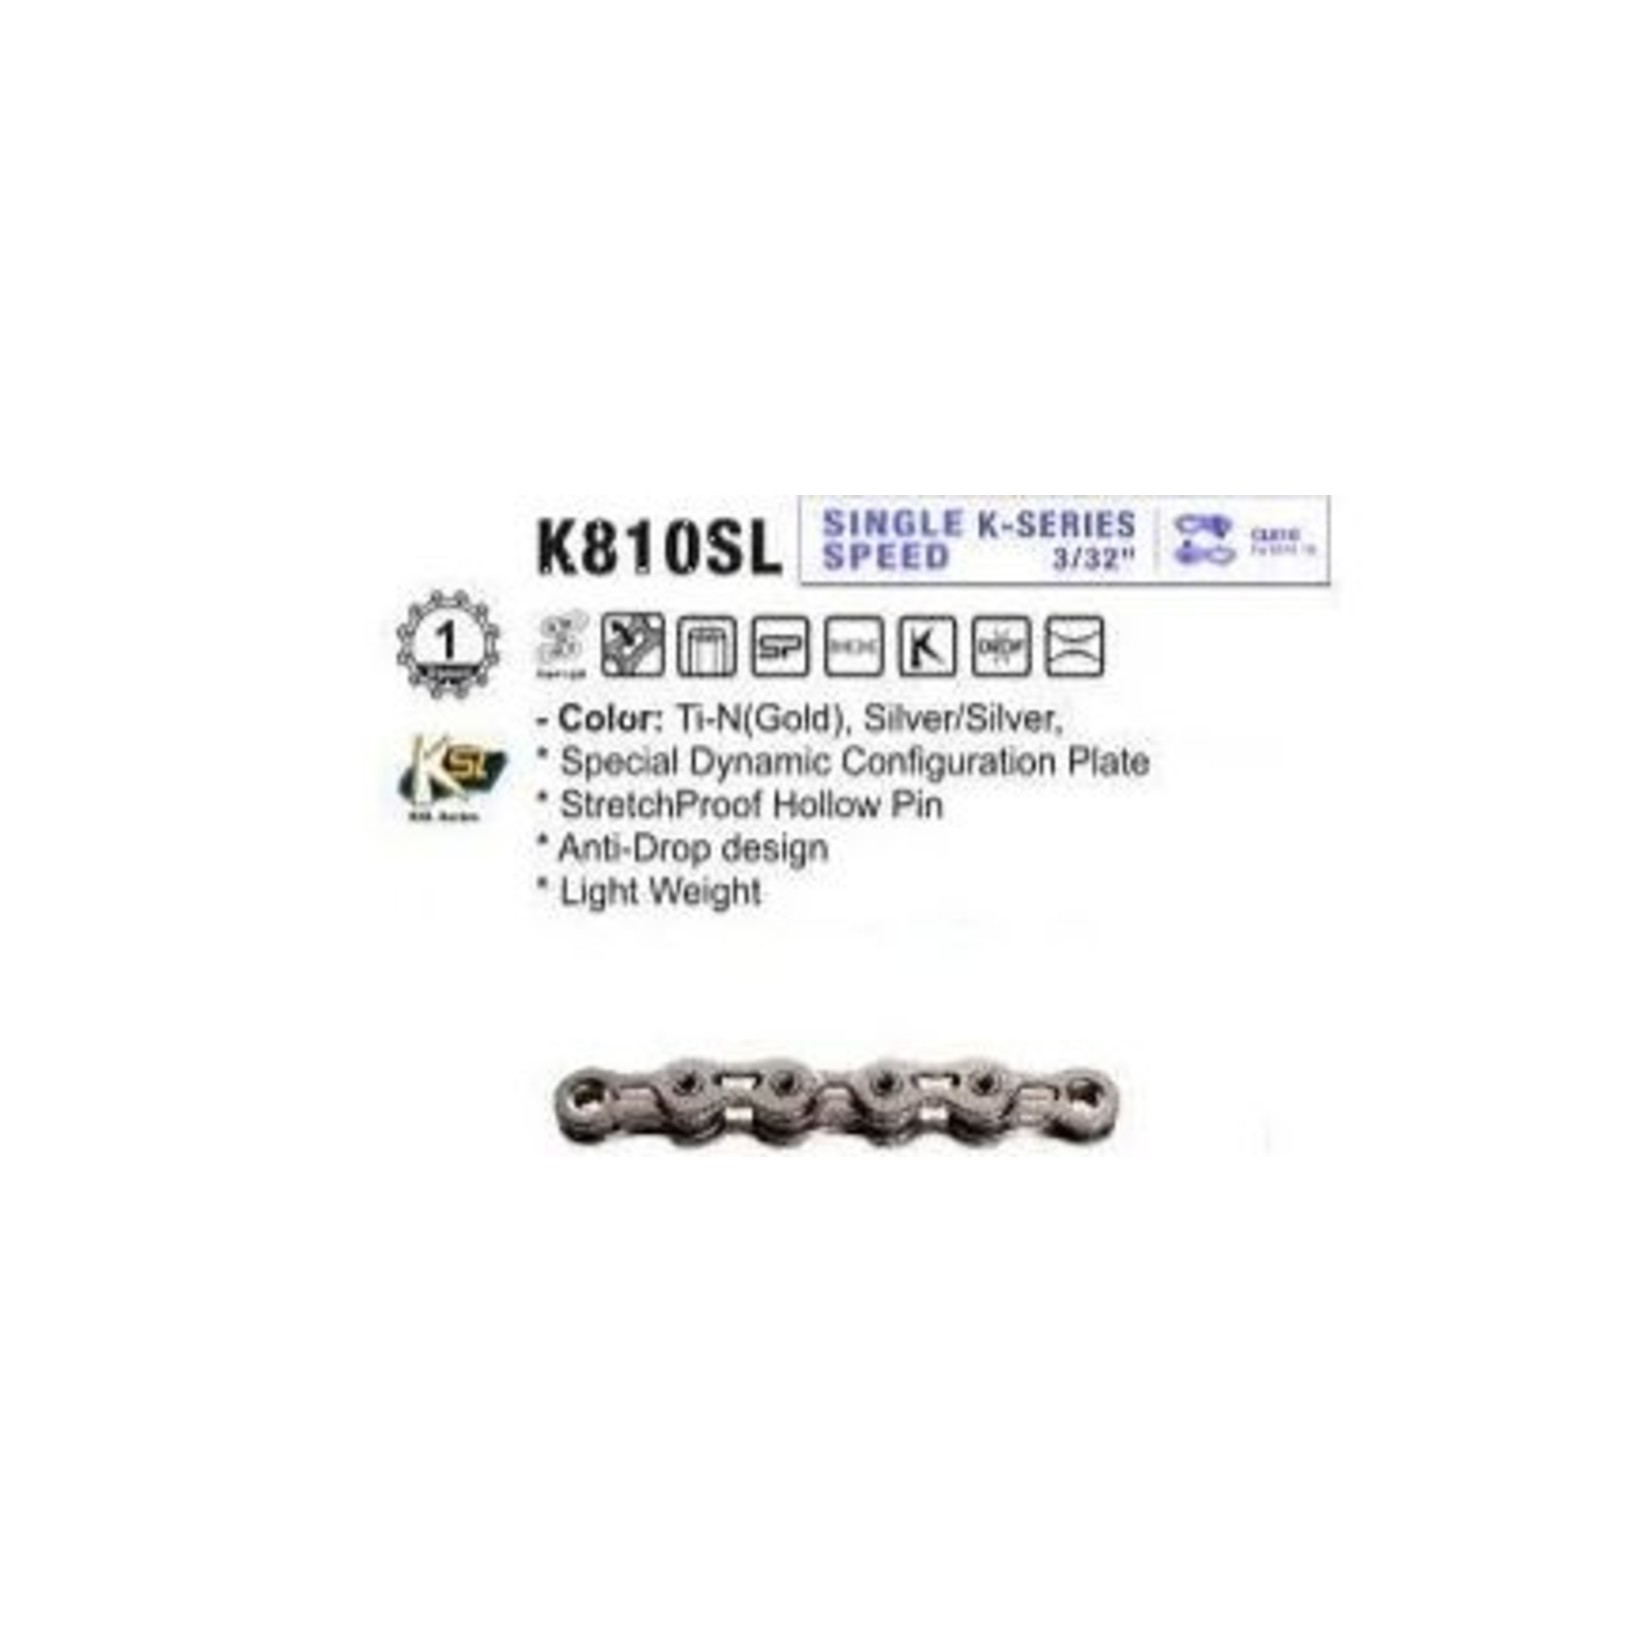 KMC KMC Bike Chain - K1Sl - Single Speed - 1/2 X 3/32" X 112 - Links - Silver/Silver